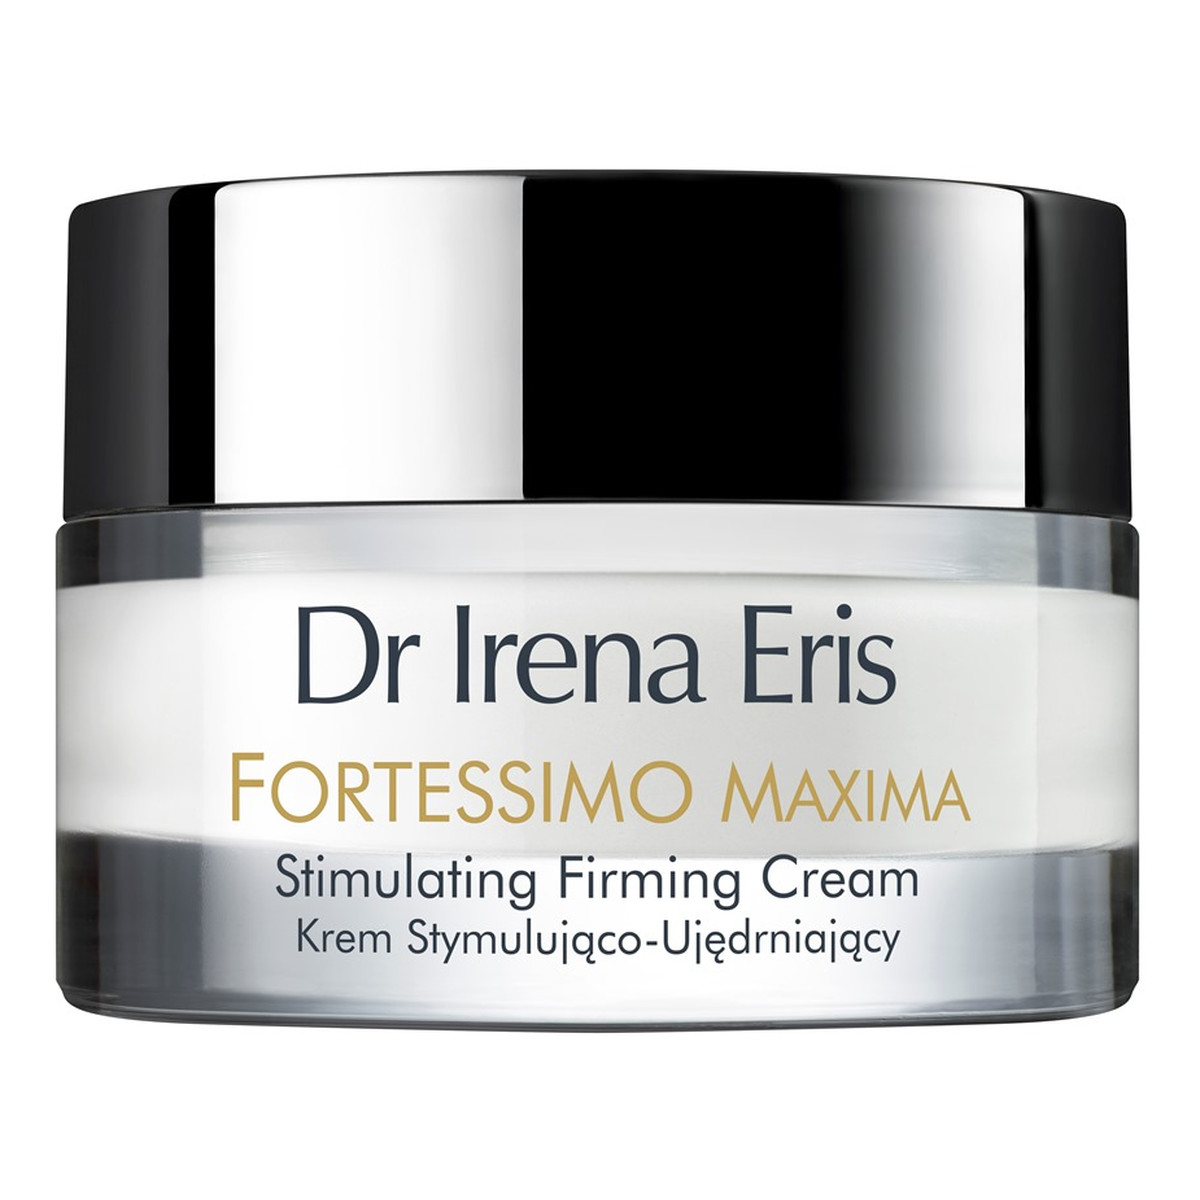 Dr Irena Eris Fortessimo Maxima Stimulating Firming Cream 55+ krem stymulująco-ujędrniający na dzień 50ml